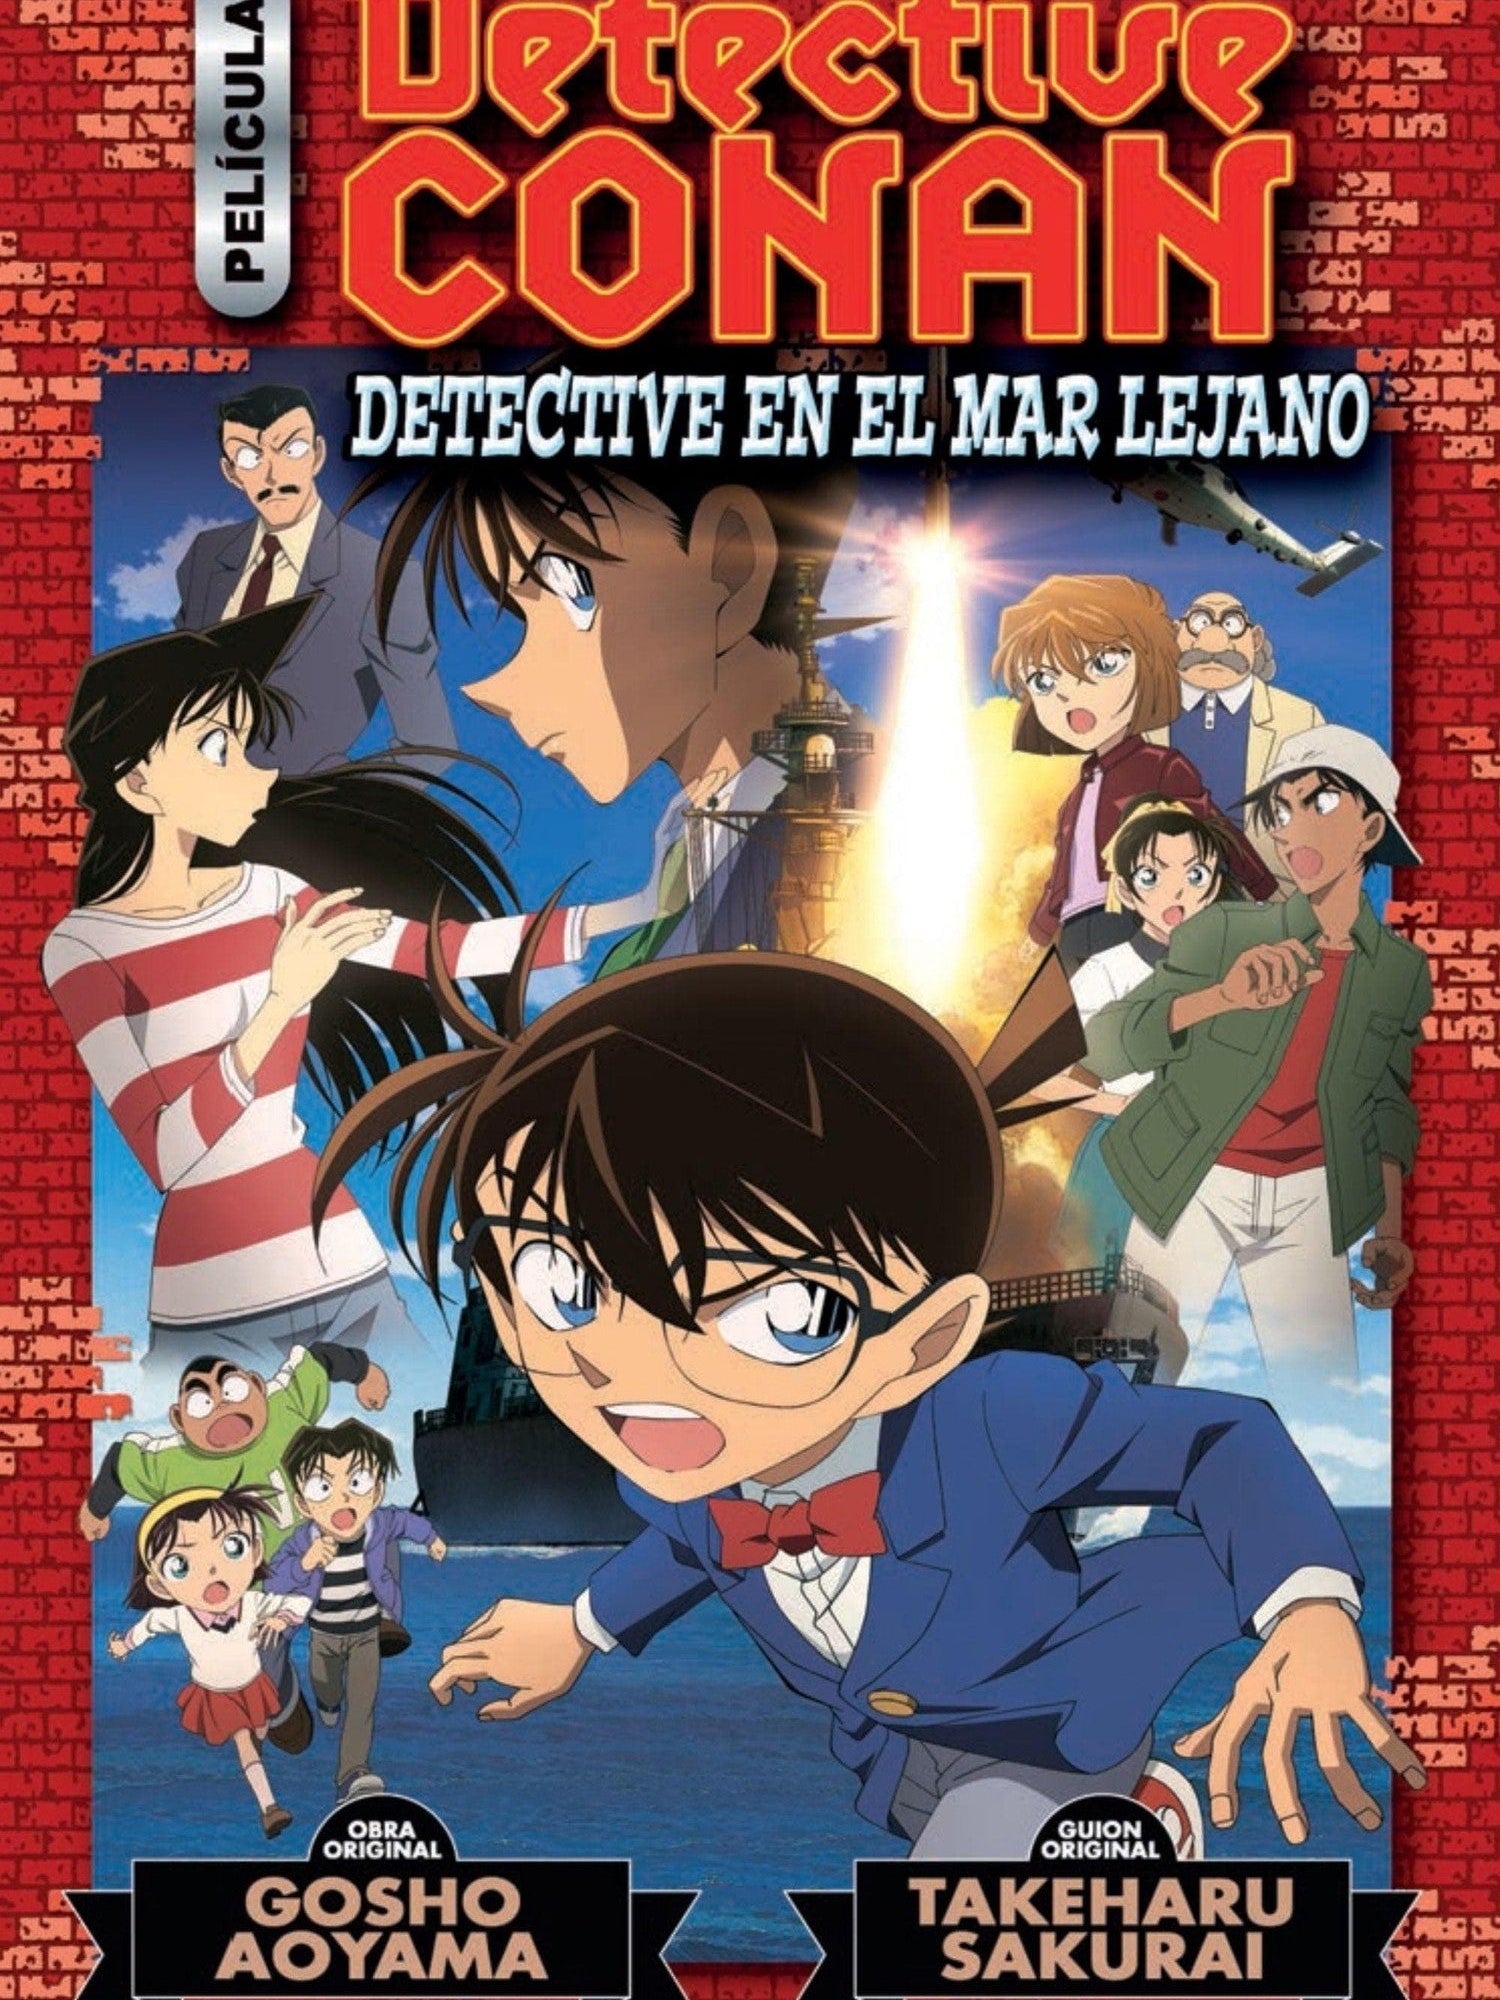 Detective Conan Anime Comic nº 3 Detective en el mar lejano